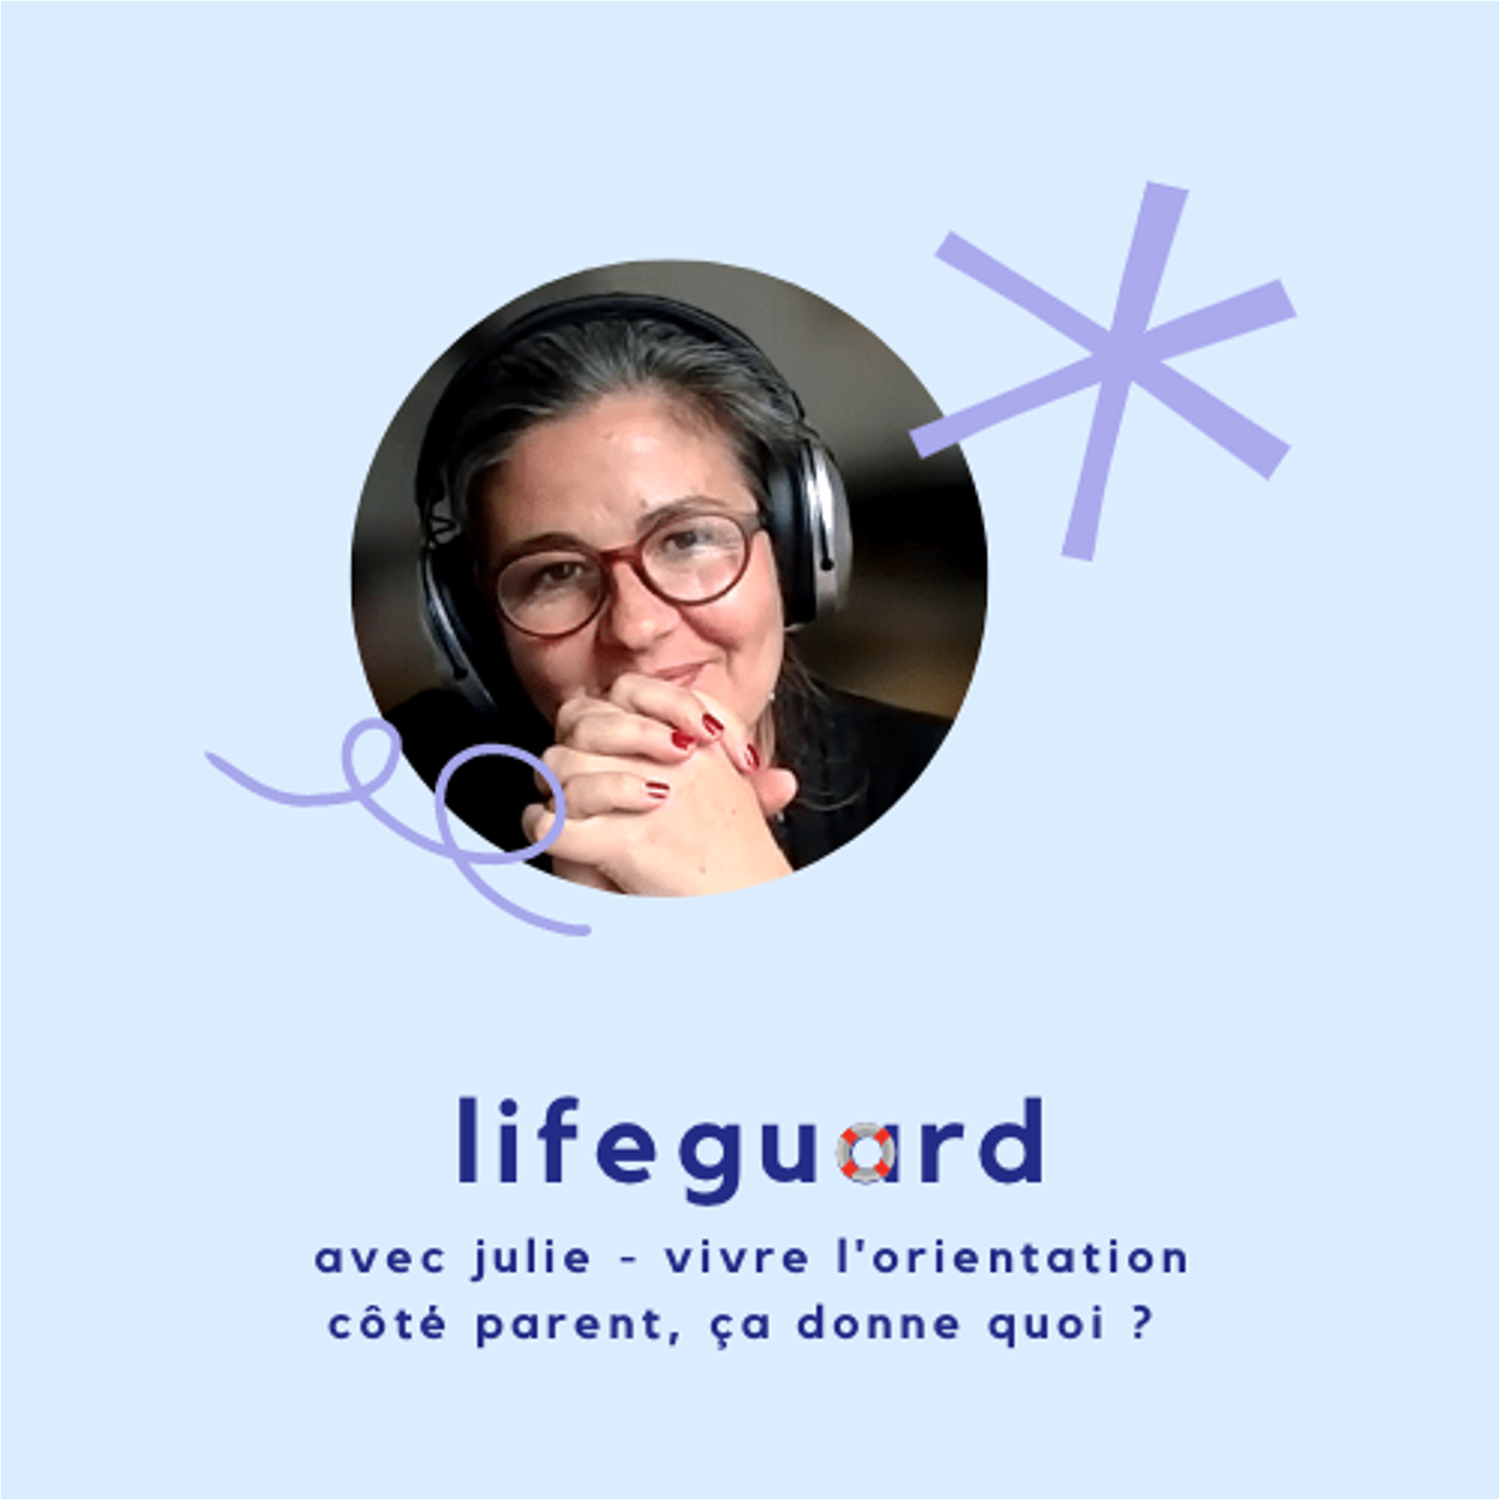 Julie - Vivre l'orientation côté parent, ça donne quoi ? Lifeguard podcast Plouf13.png